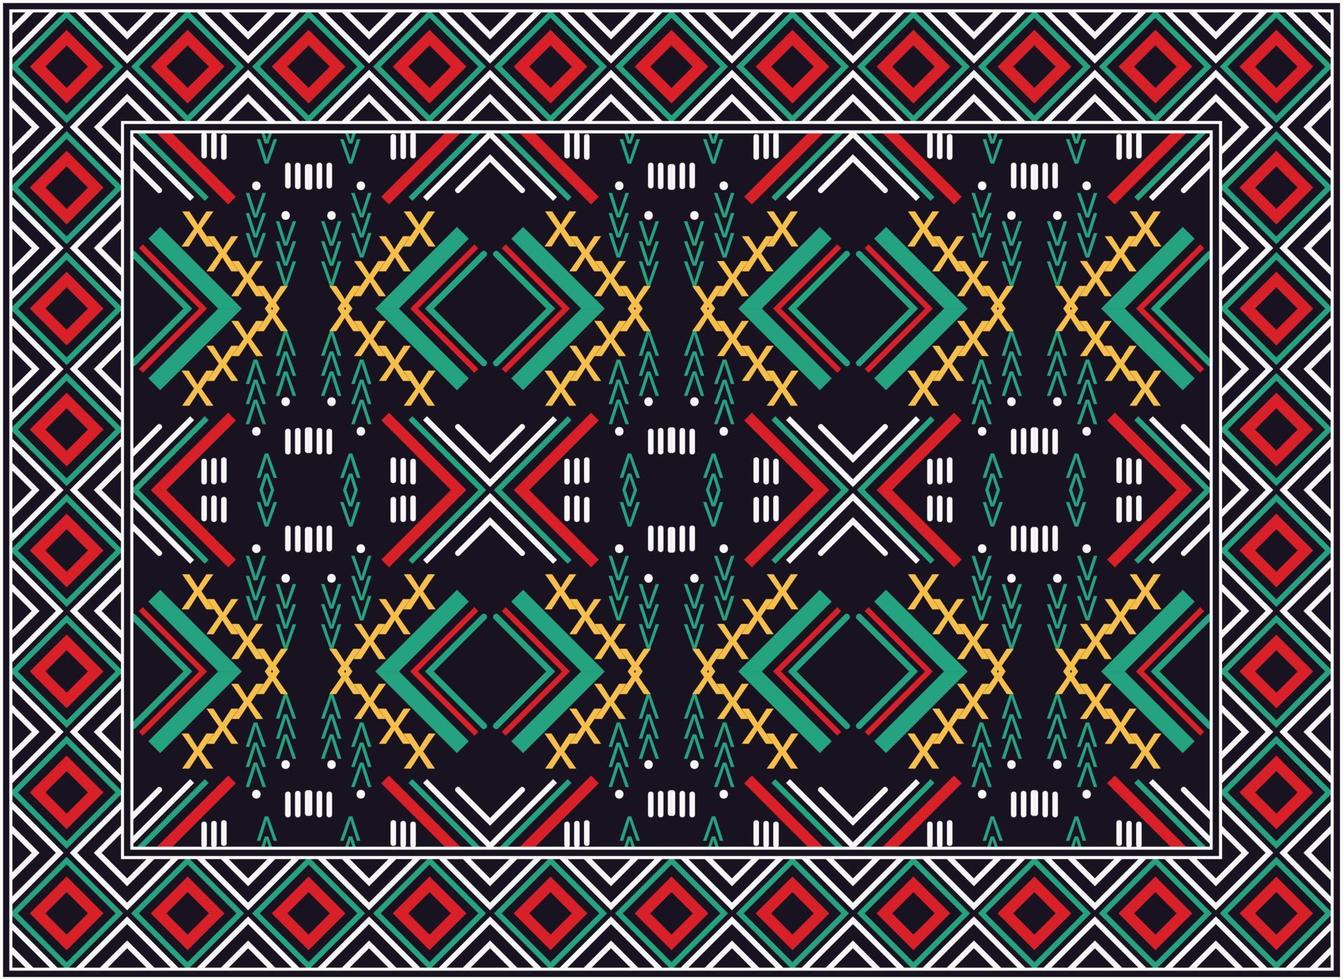 antico persiano tappeto, africano motivo moderno persiano tappeto, africano etnico azteco stile design per Stampa tessuto tappeti, asciugamani, fazzoletti, sciarpe tappeto, vettore